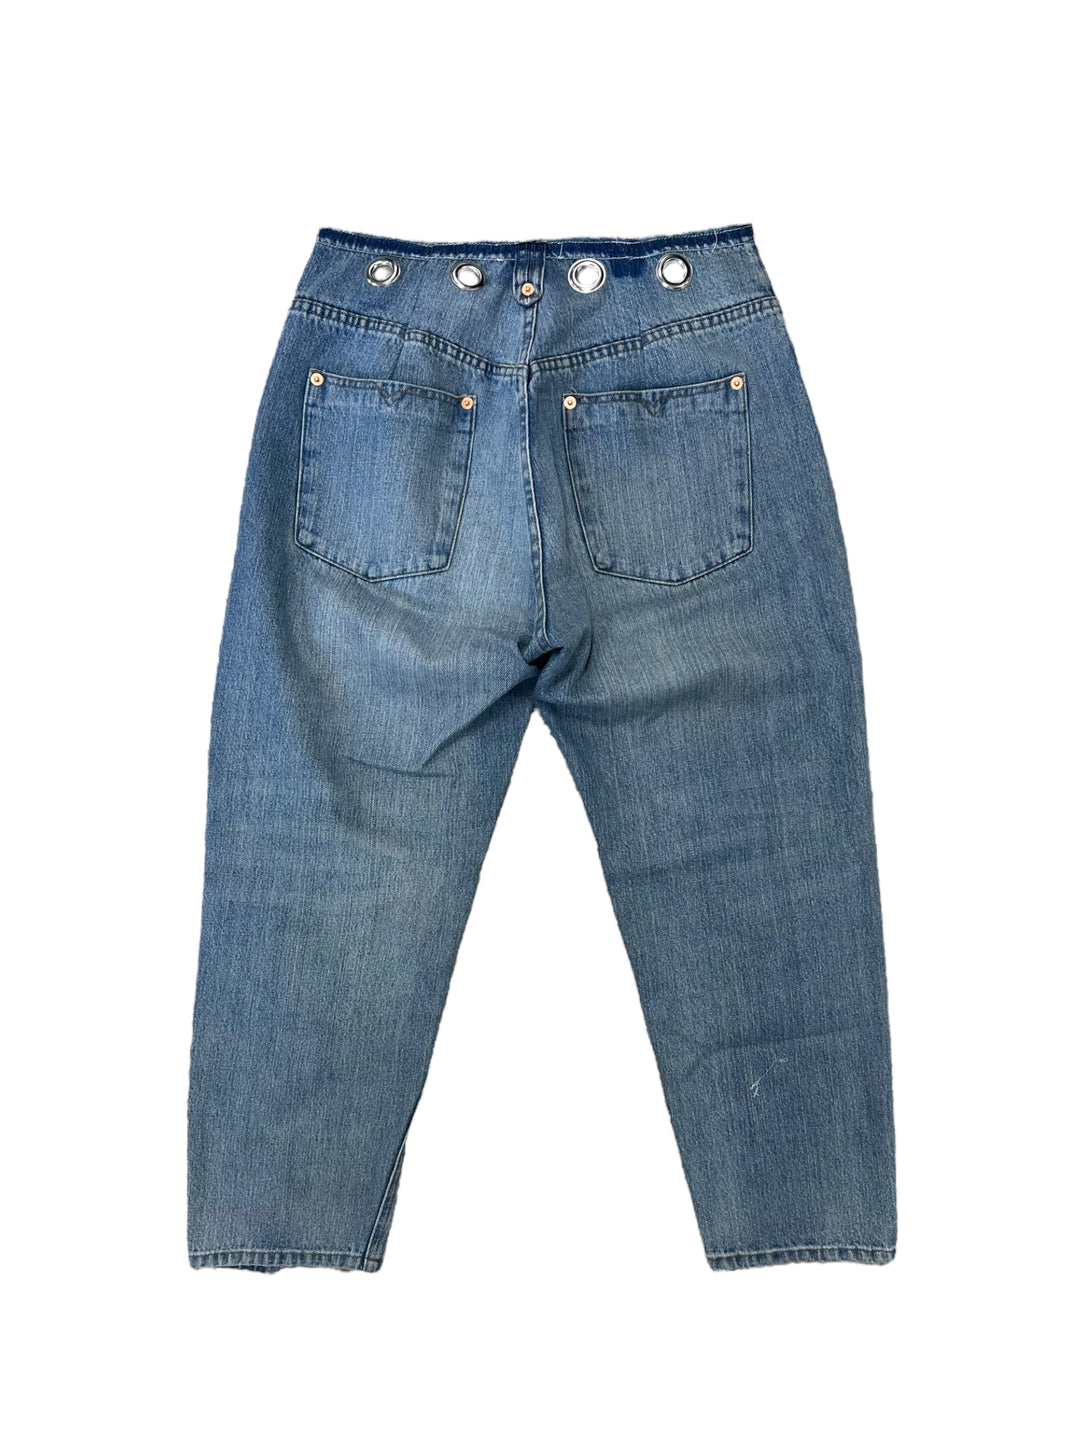 Diesel y2k jeans women’s Medium (38)